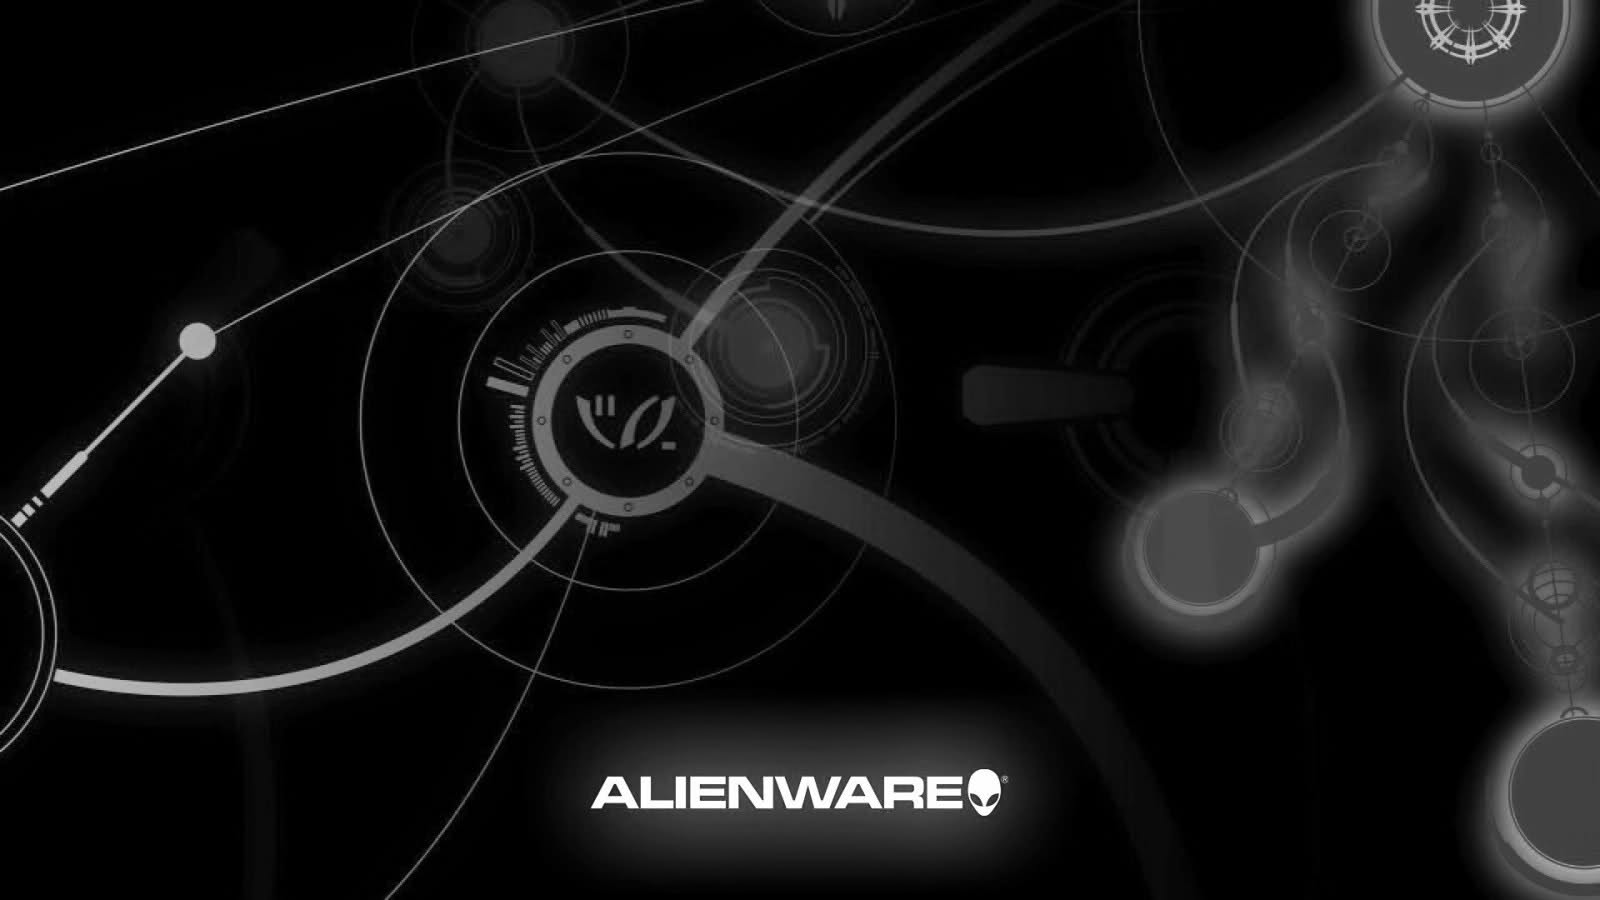 45 Alienware Lock Screen Wallpaper On Wallpapersafari